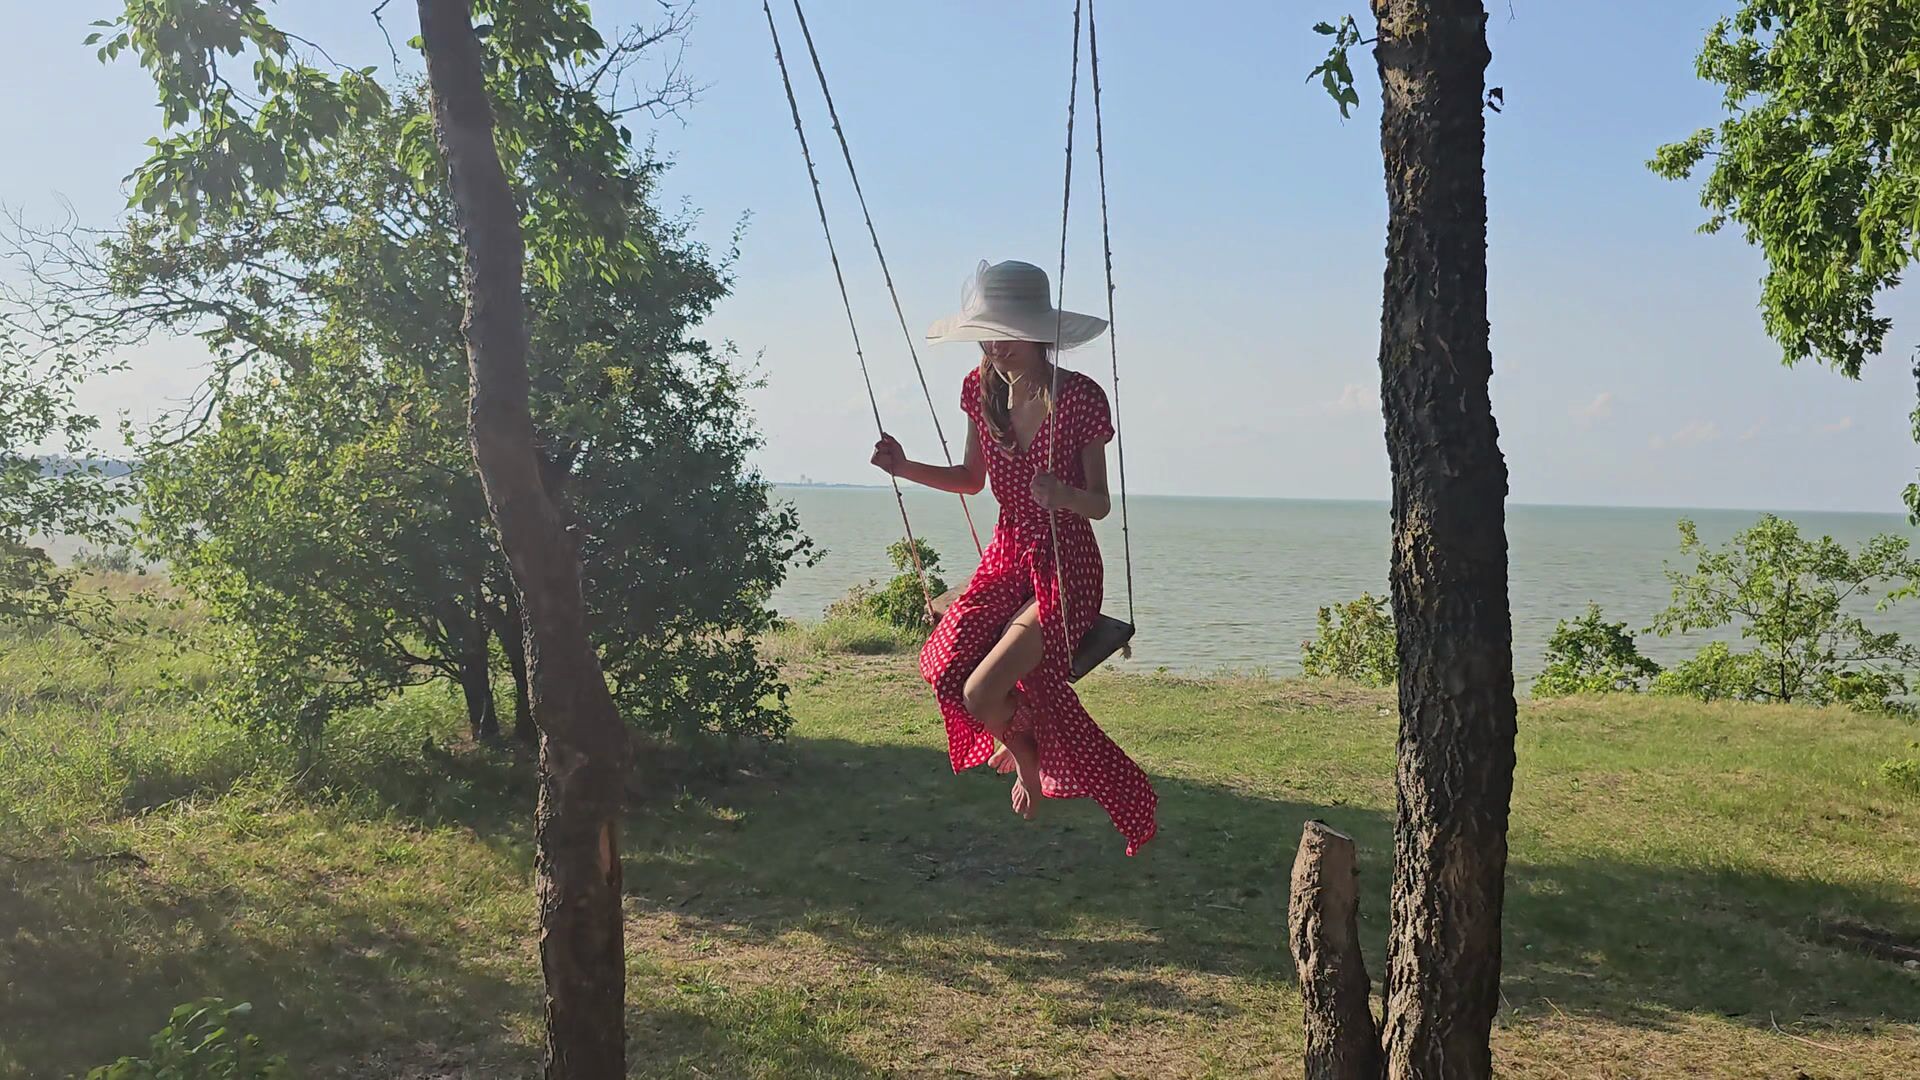 Ride on a swing